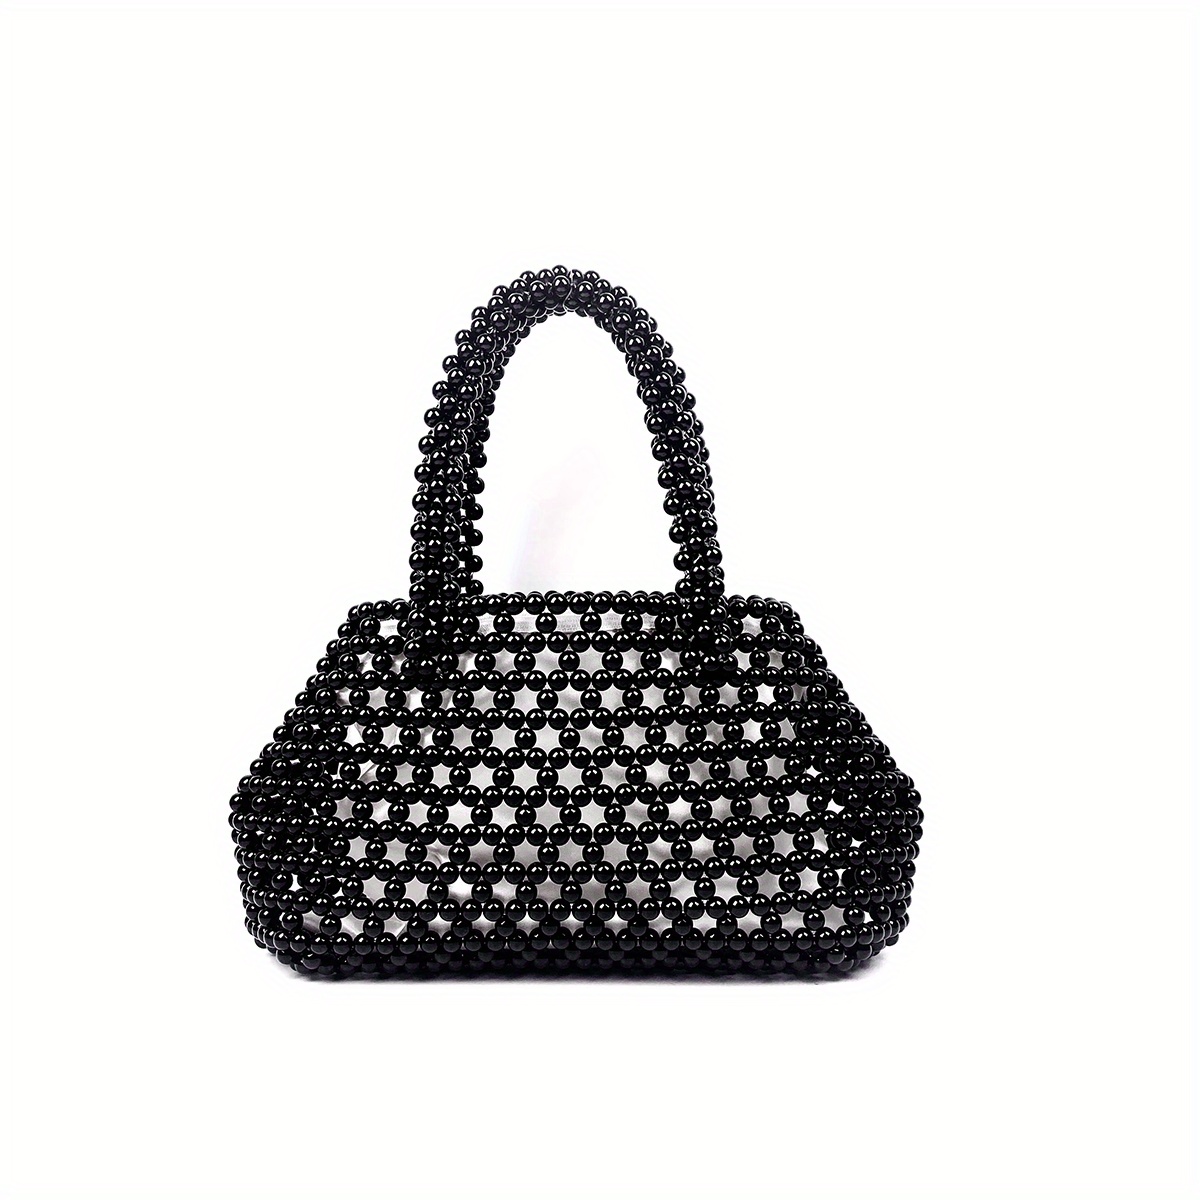 Vintage black pearl bag diy beaded handbag